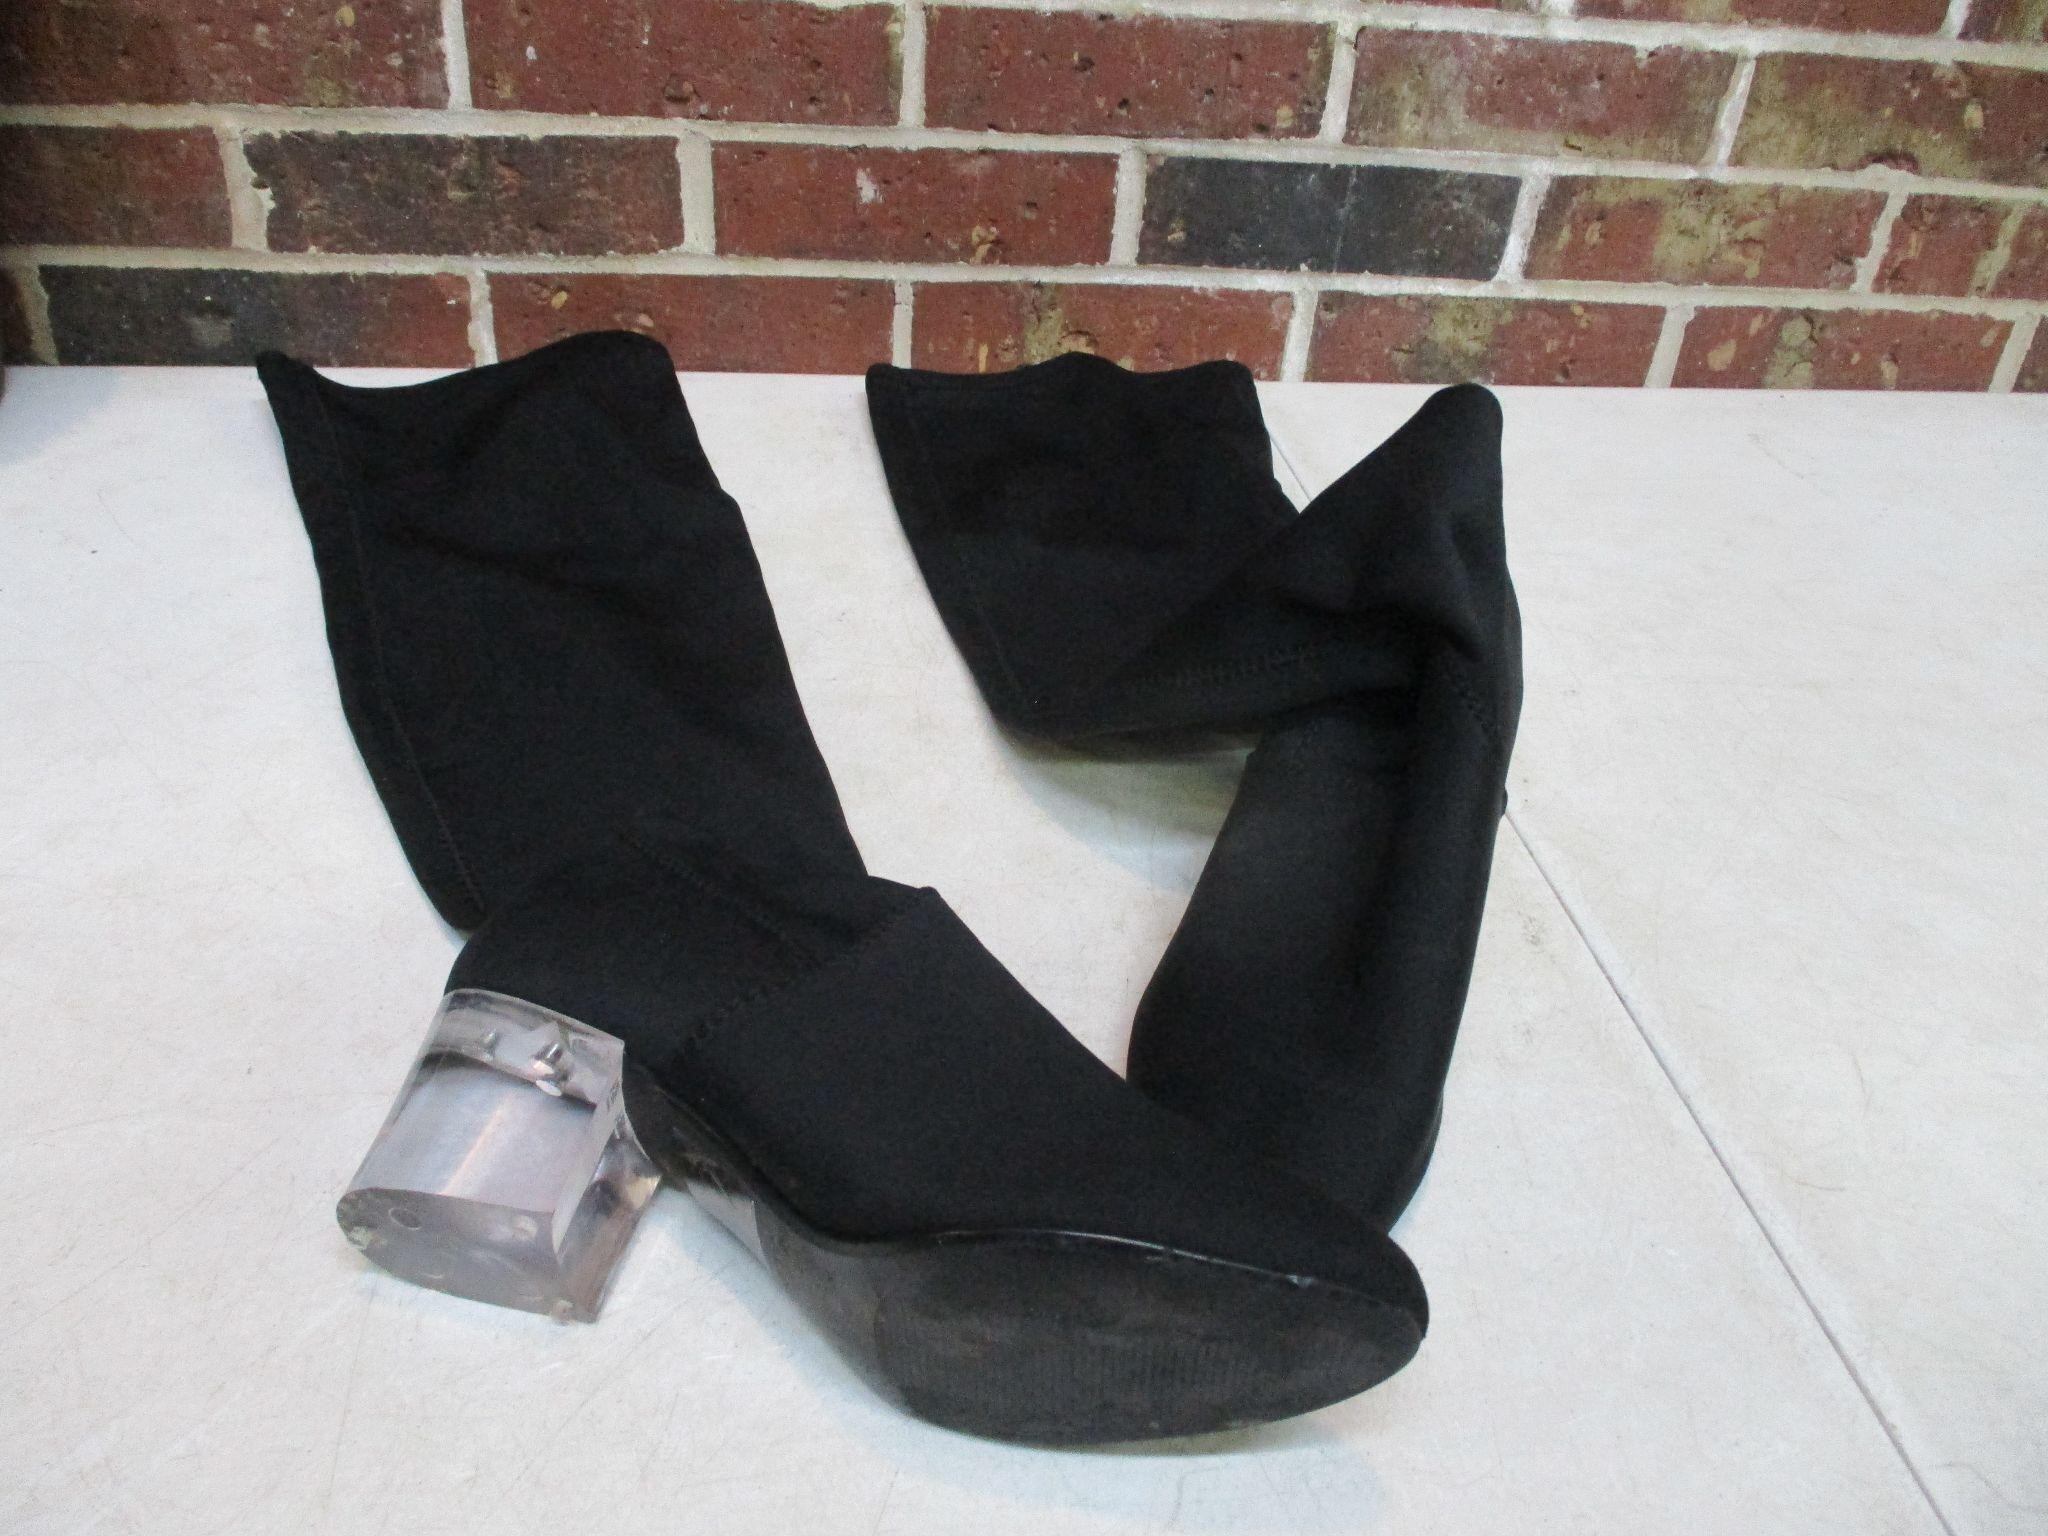 Thigh High Black Boots - Sz 8 Women's